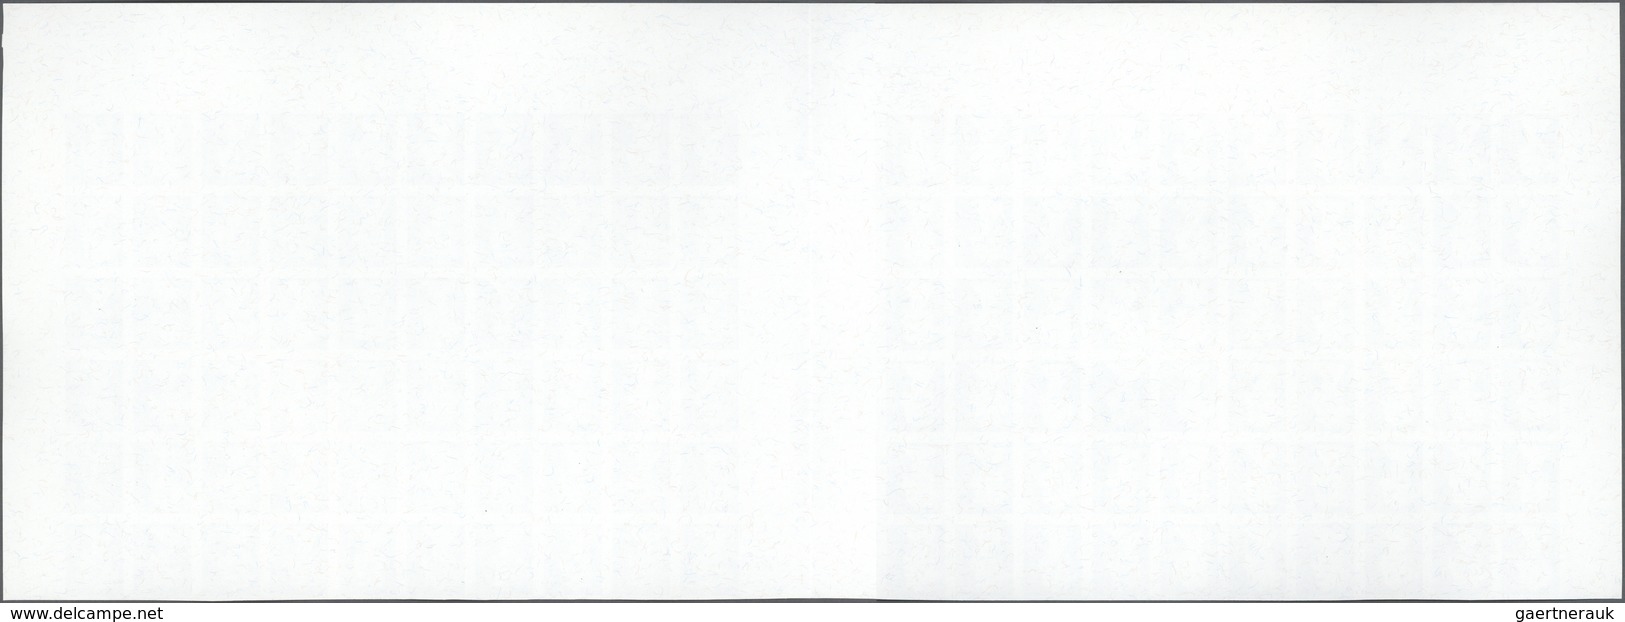 01510 Großbritannien - Machin: 1997, Imperforated Proof In Issued Design On Gummed Paper, Grey, Without Va - Machin-Ausgaben